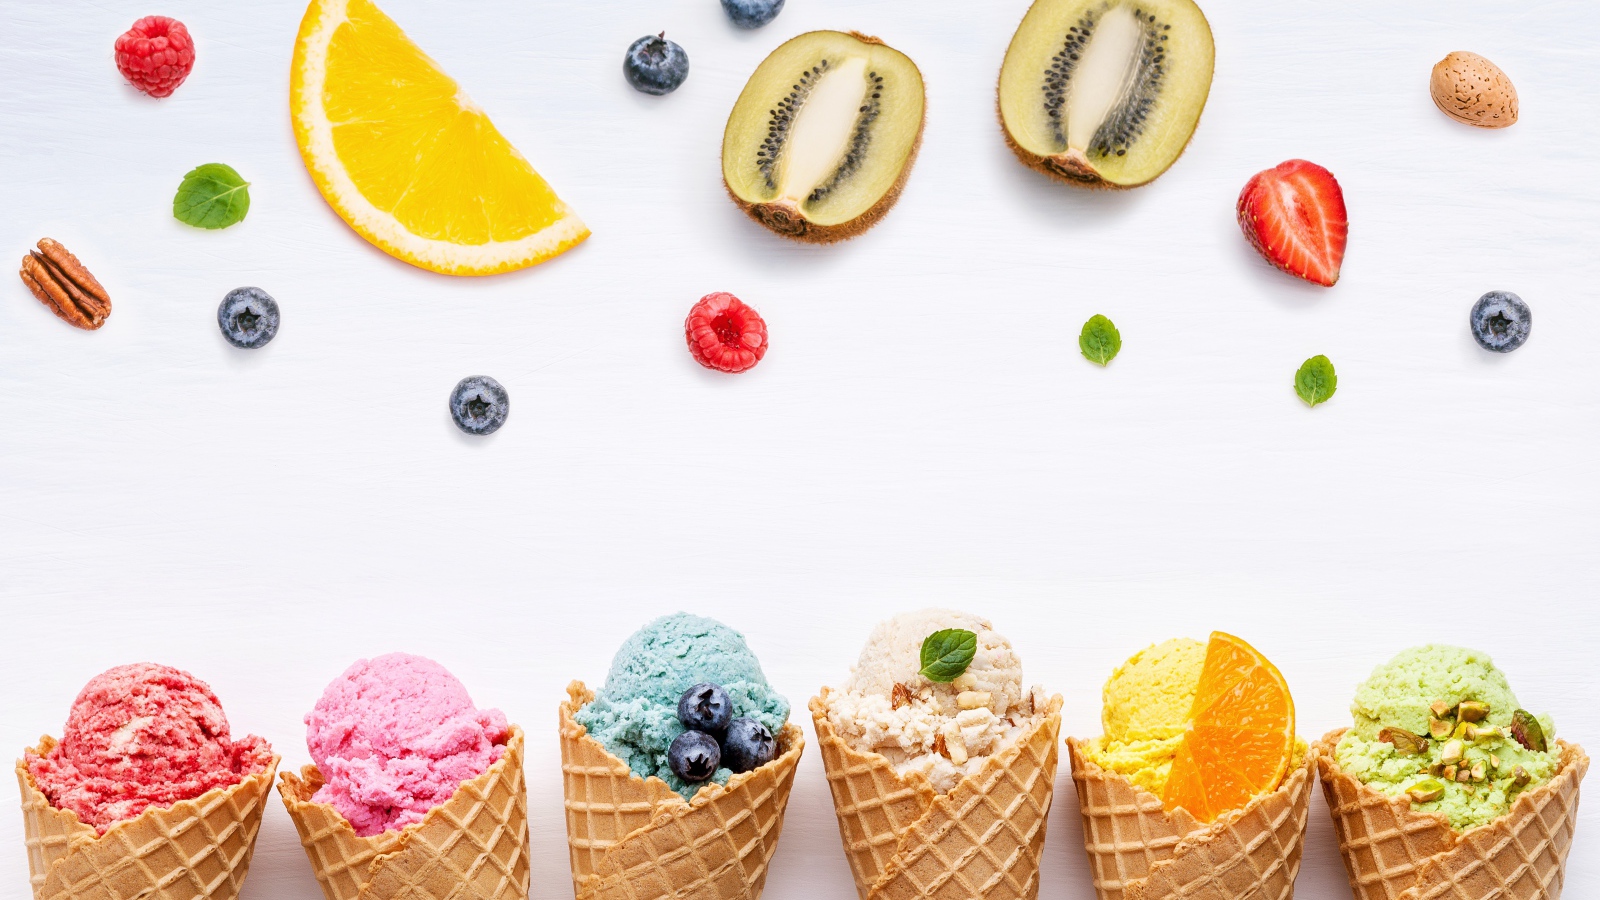 Фруктовое мороженое в вафельных рожках на белом фоне с ягодами